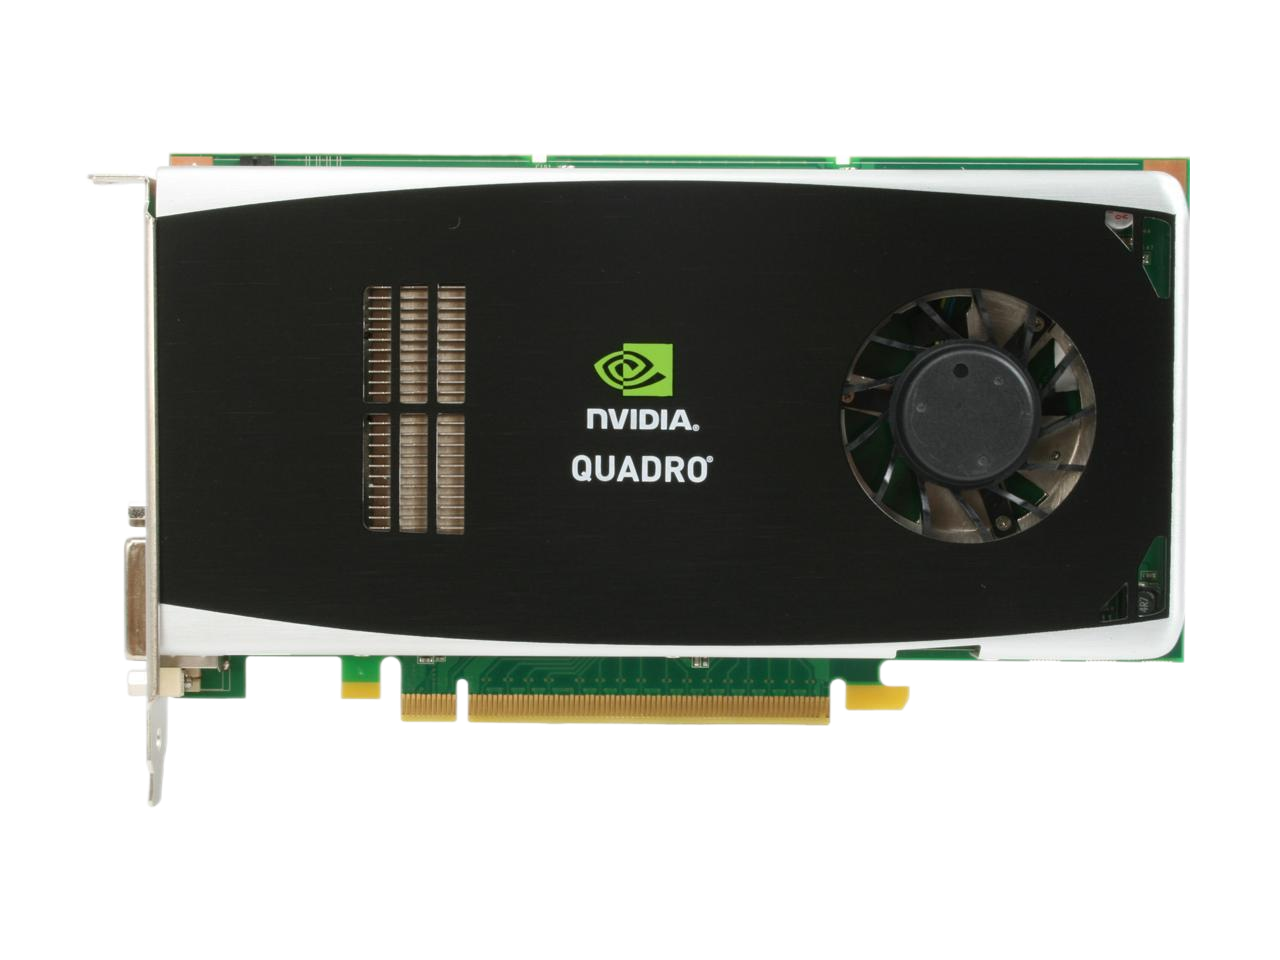 HP NVIDIA Quadro FX 3800 1GB 256-bit GDDR3 PCI Express 2.0 x16 Workstation Video Card FY949UT